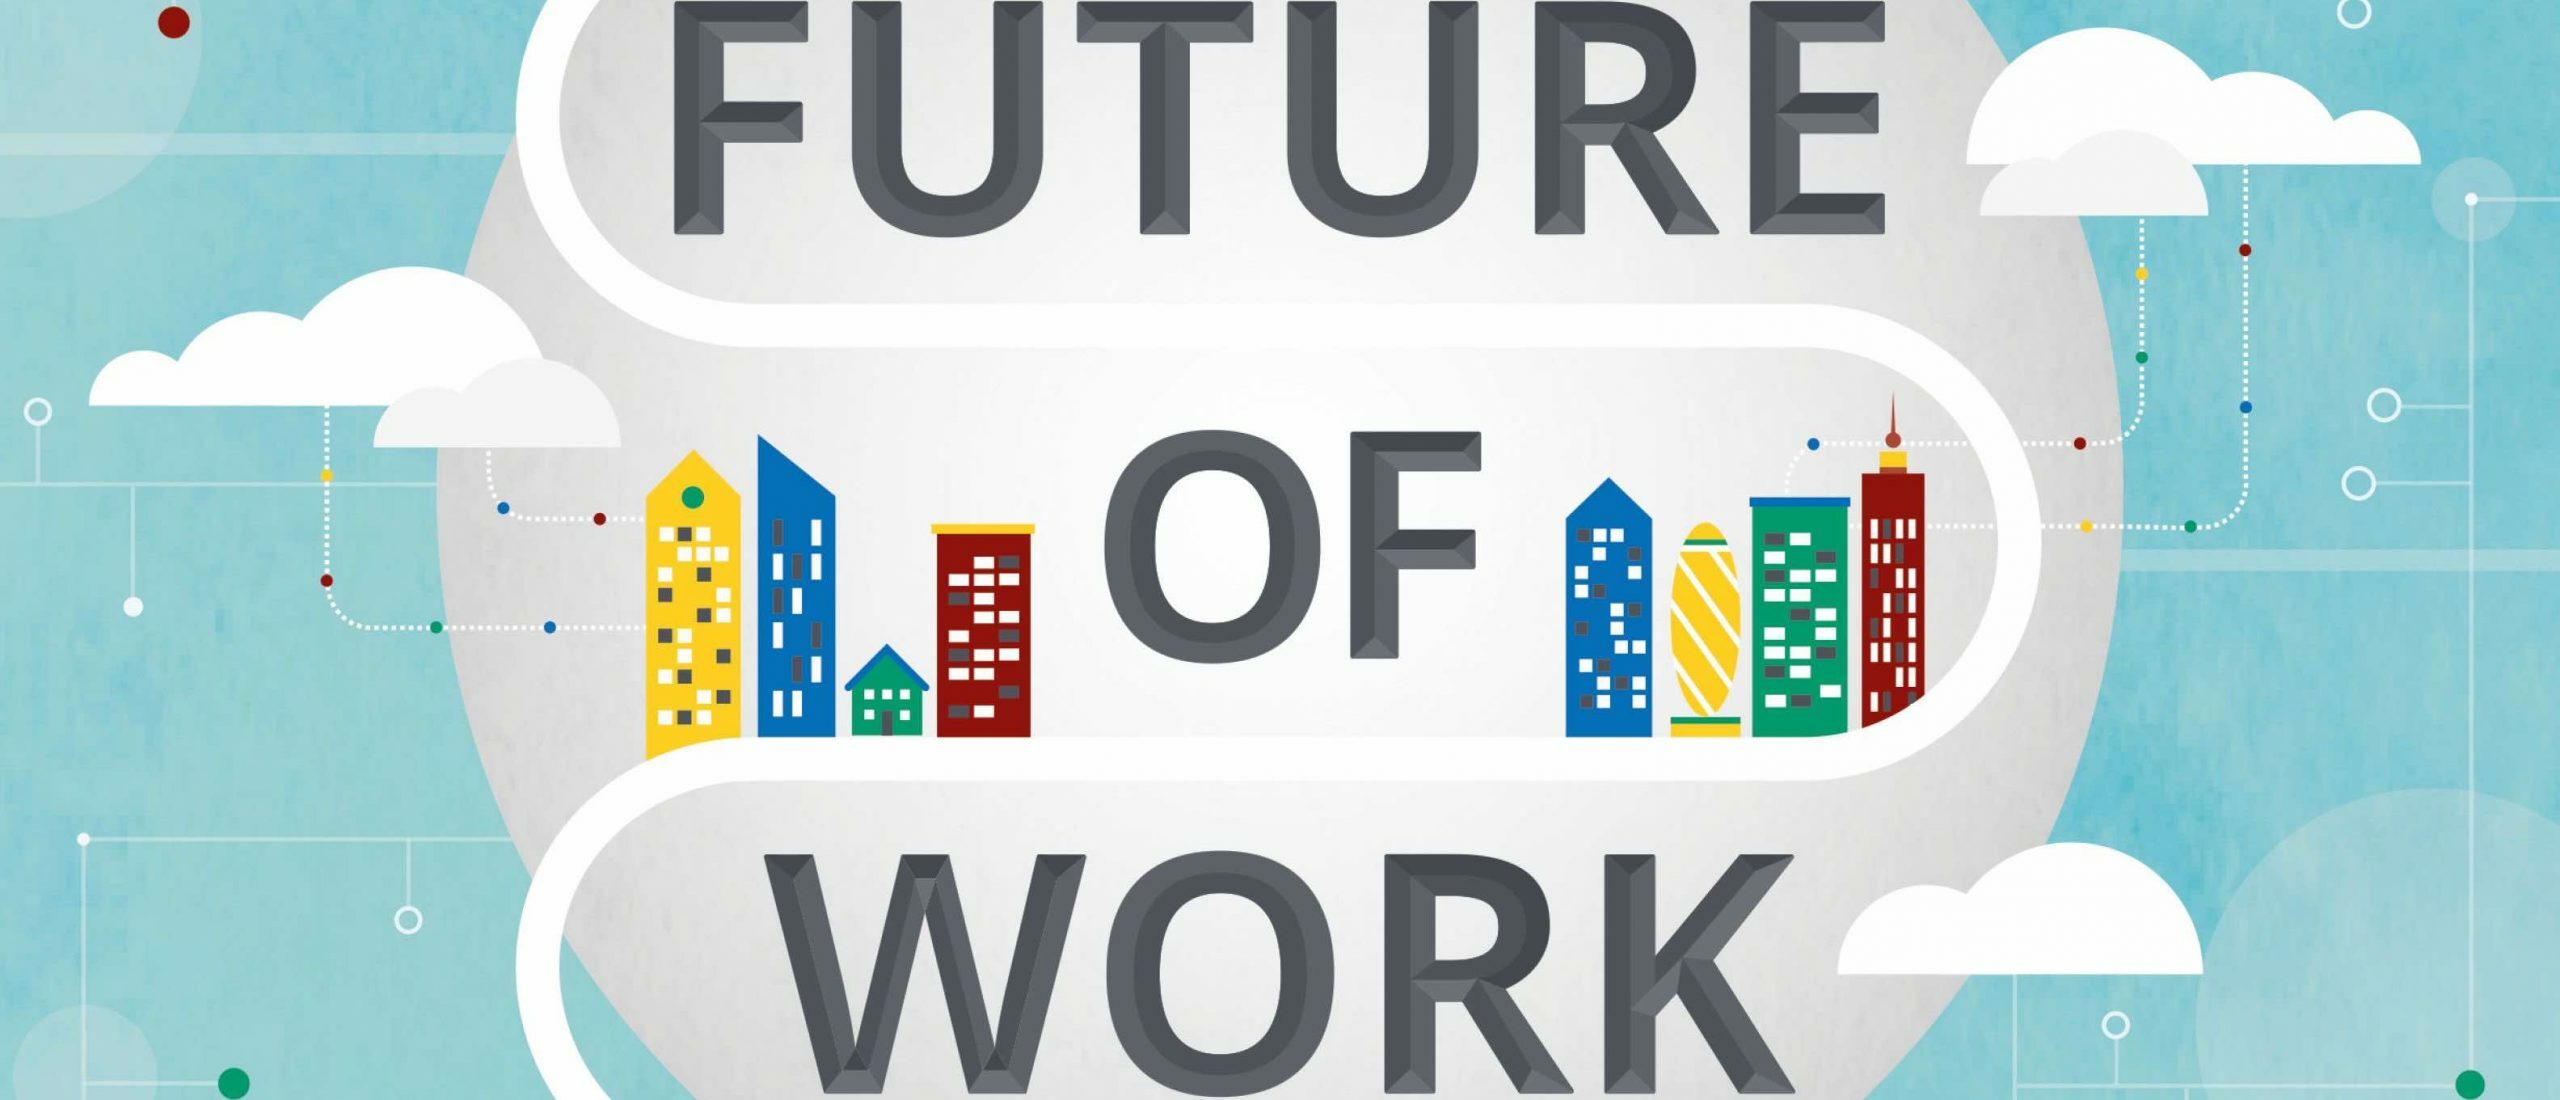 Future of work and education? Talentgericht werken!